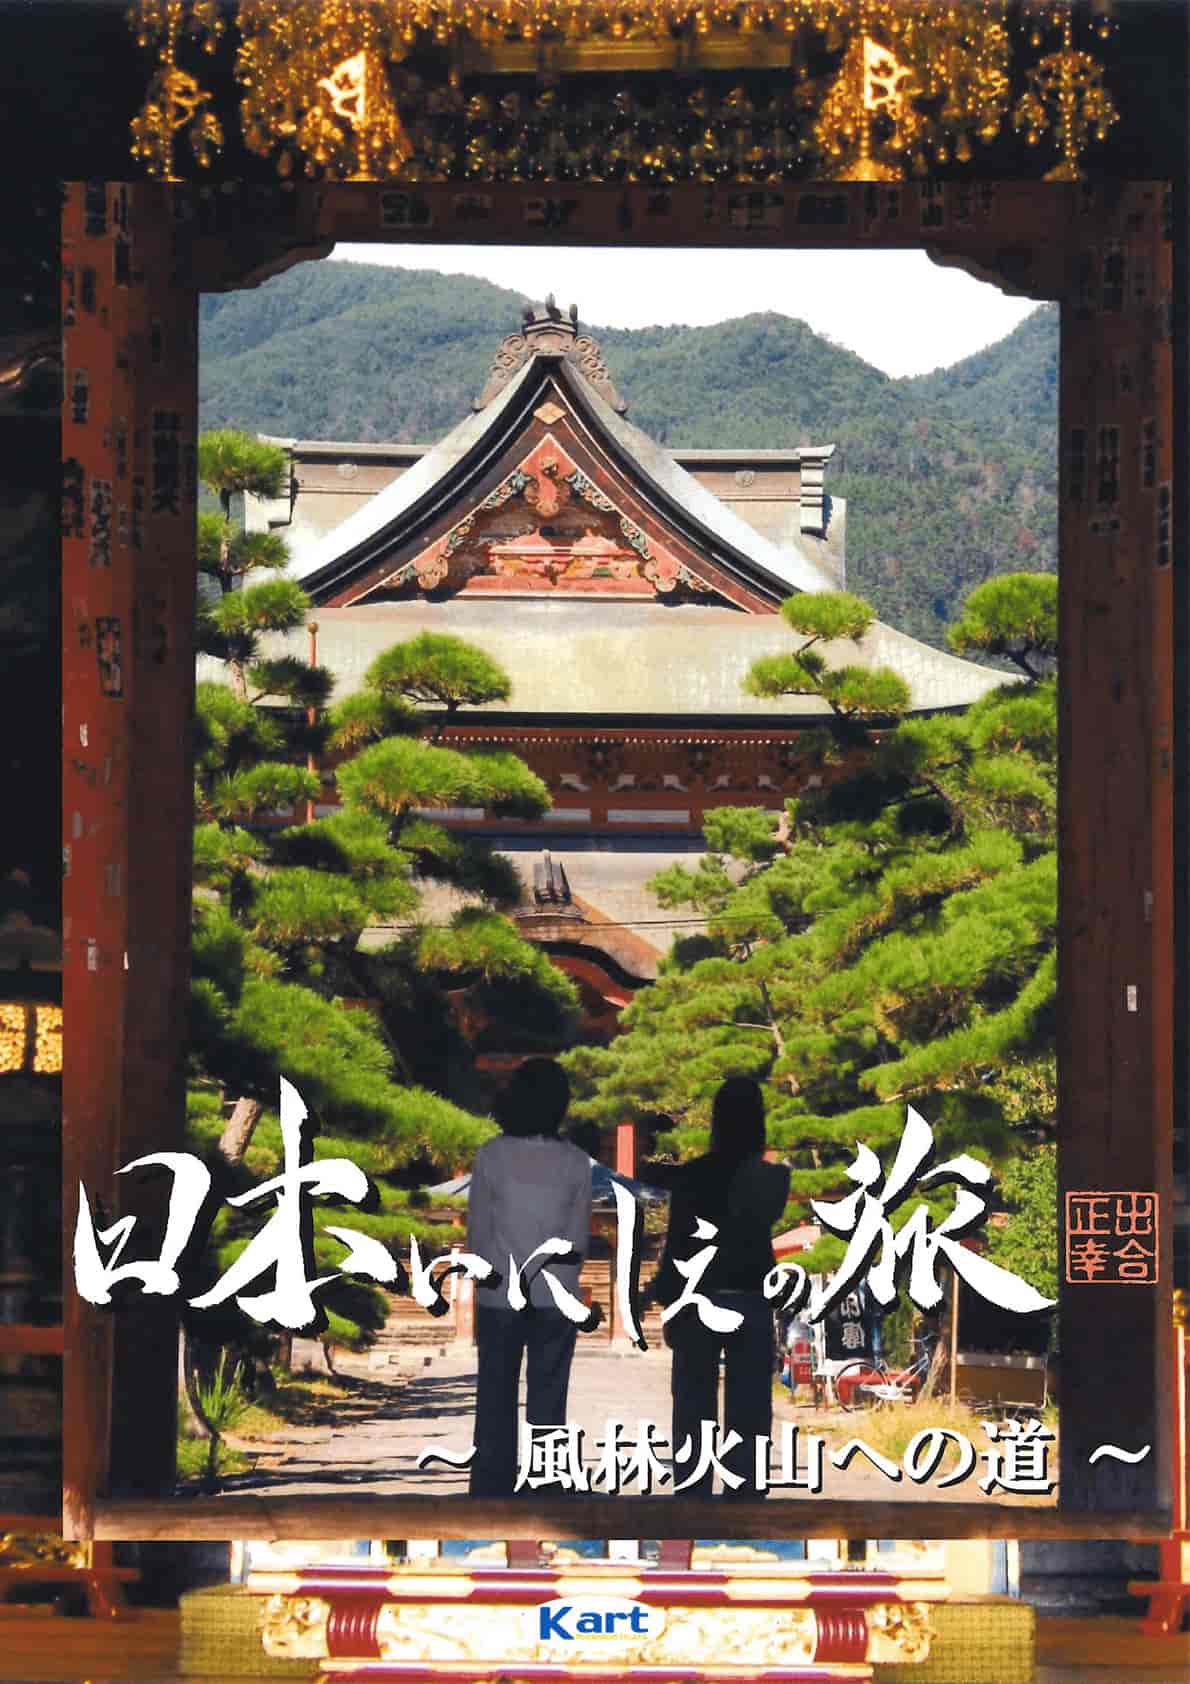 Travel in Japanese antiquity - Fu Rin Ka Zan